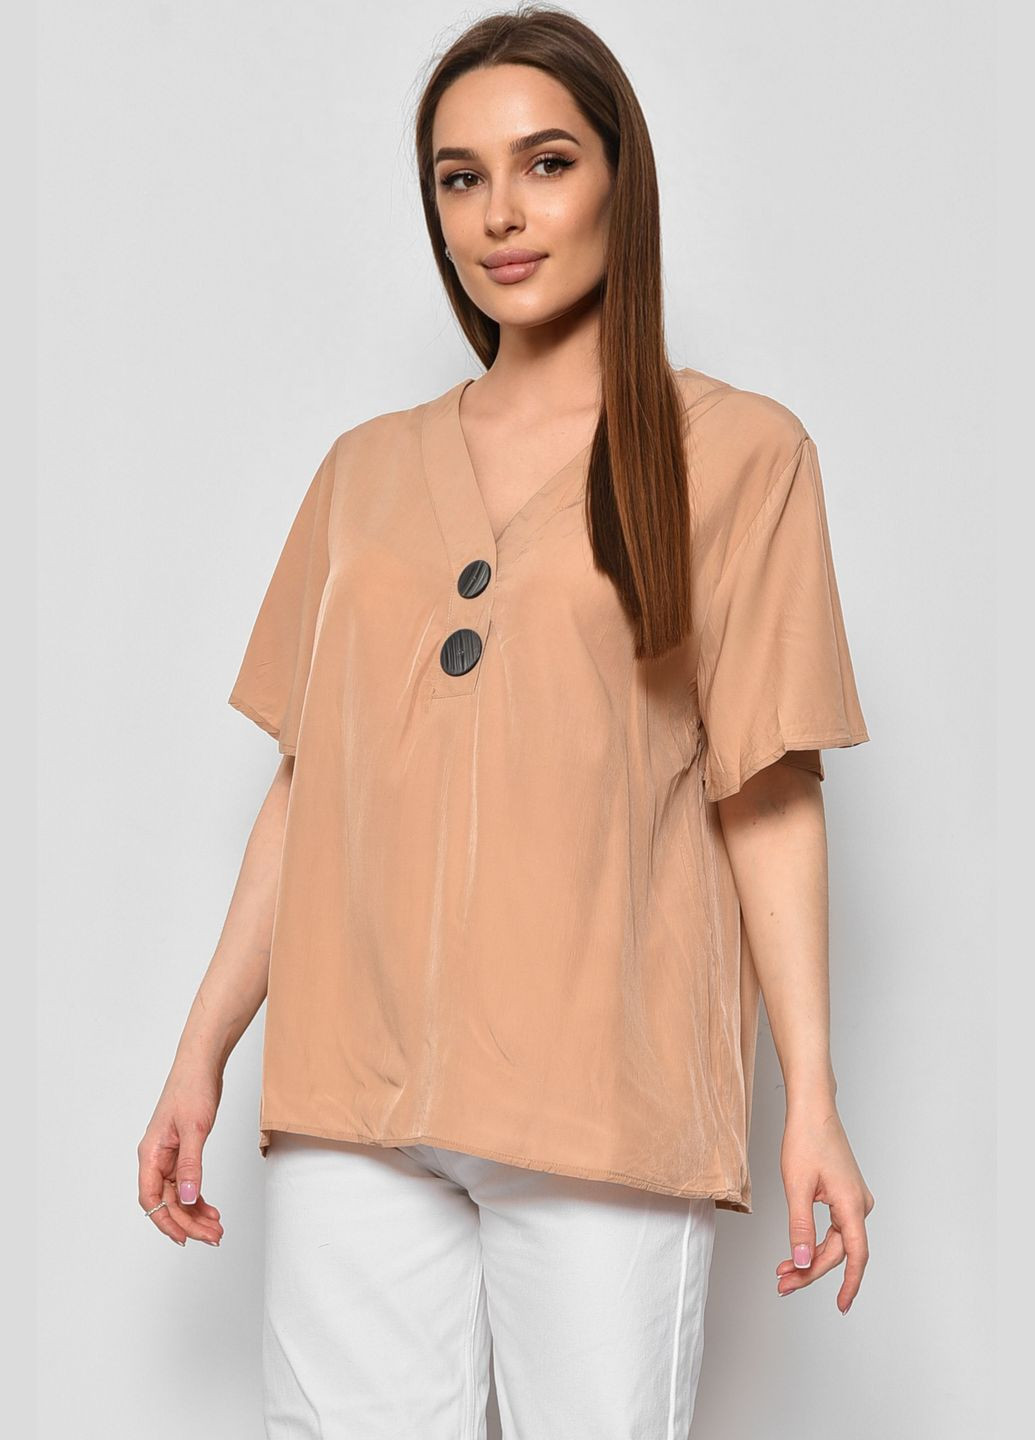 Бежевая демисезонная блуза женская с коротким рукавом бежевого цвета с баской Let's Shop